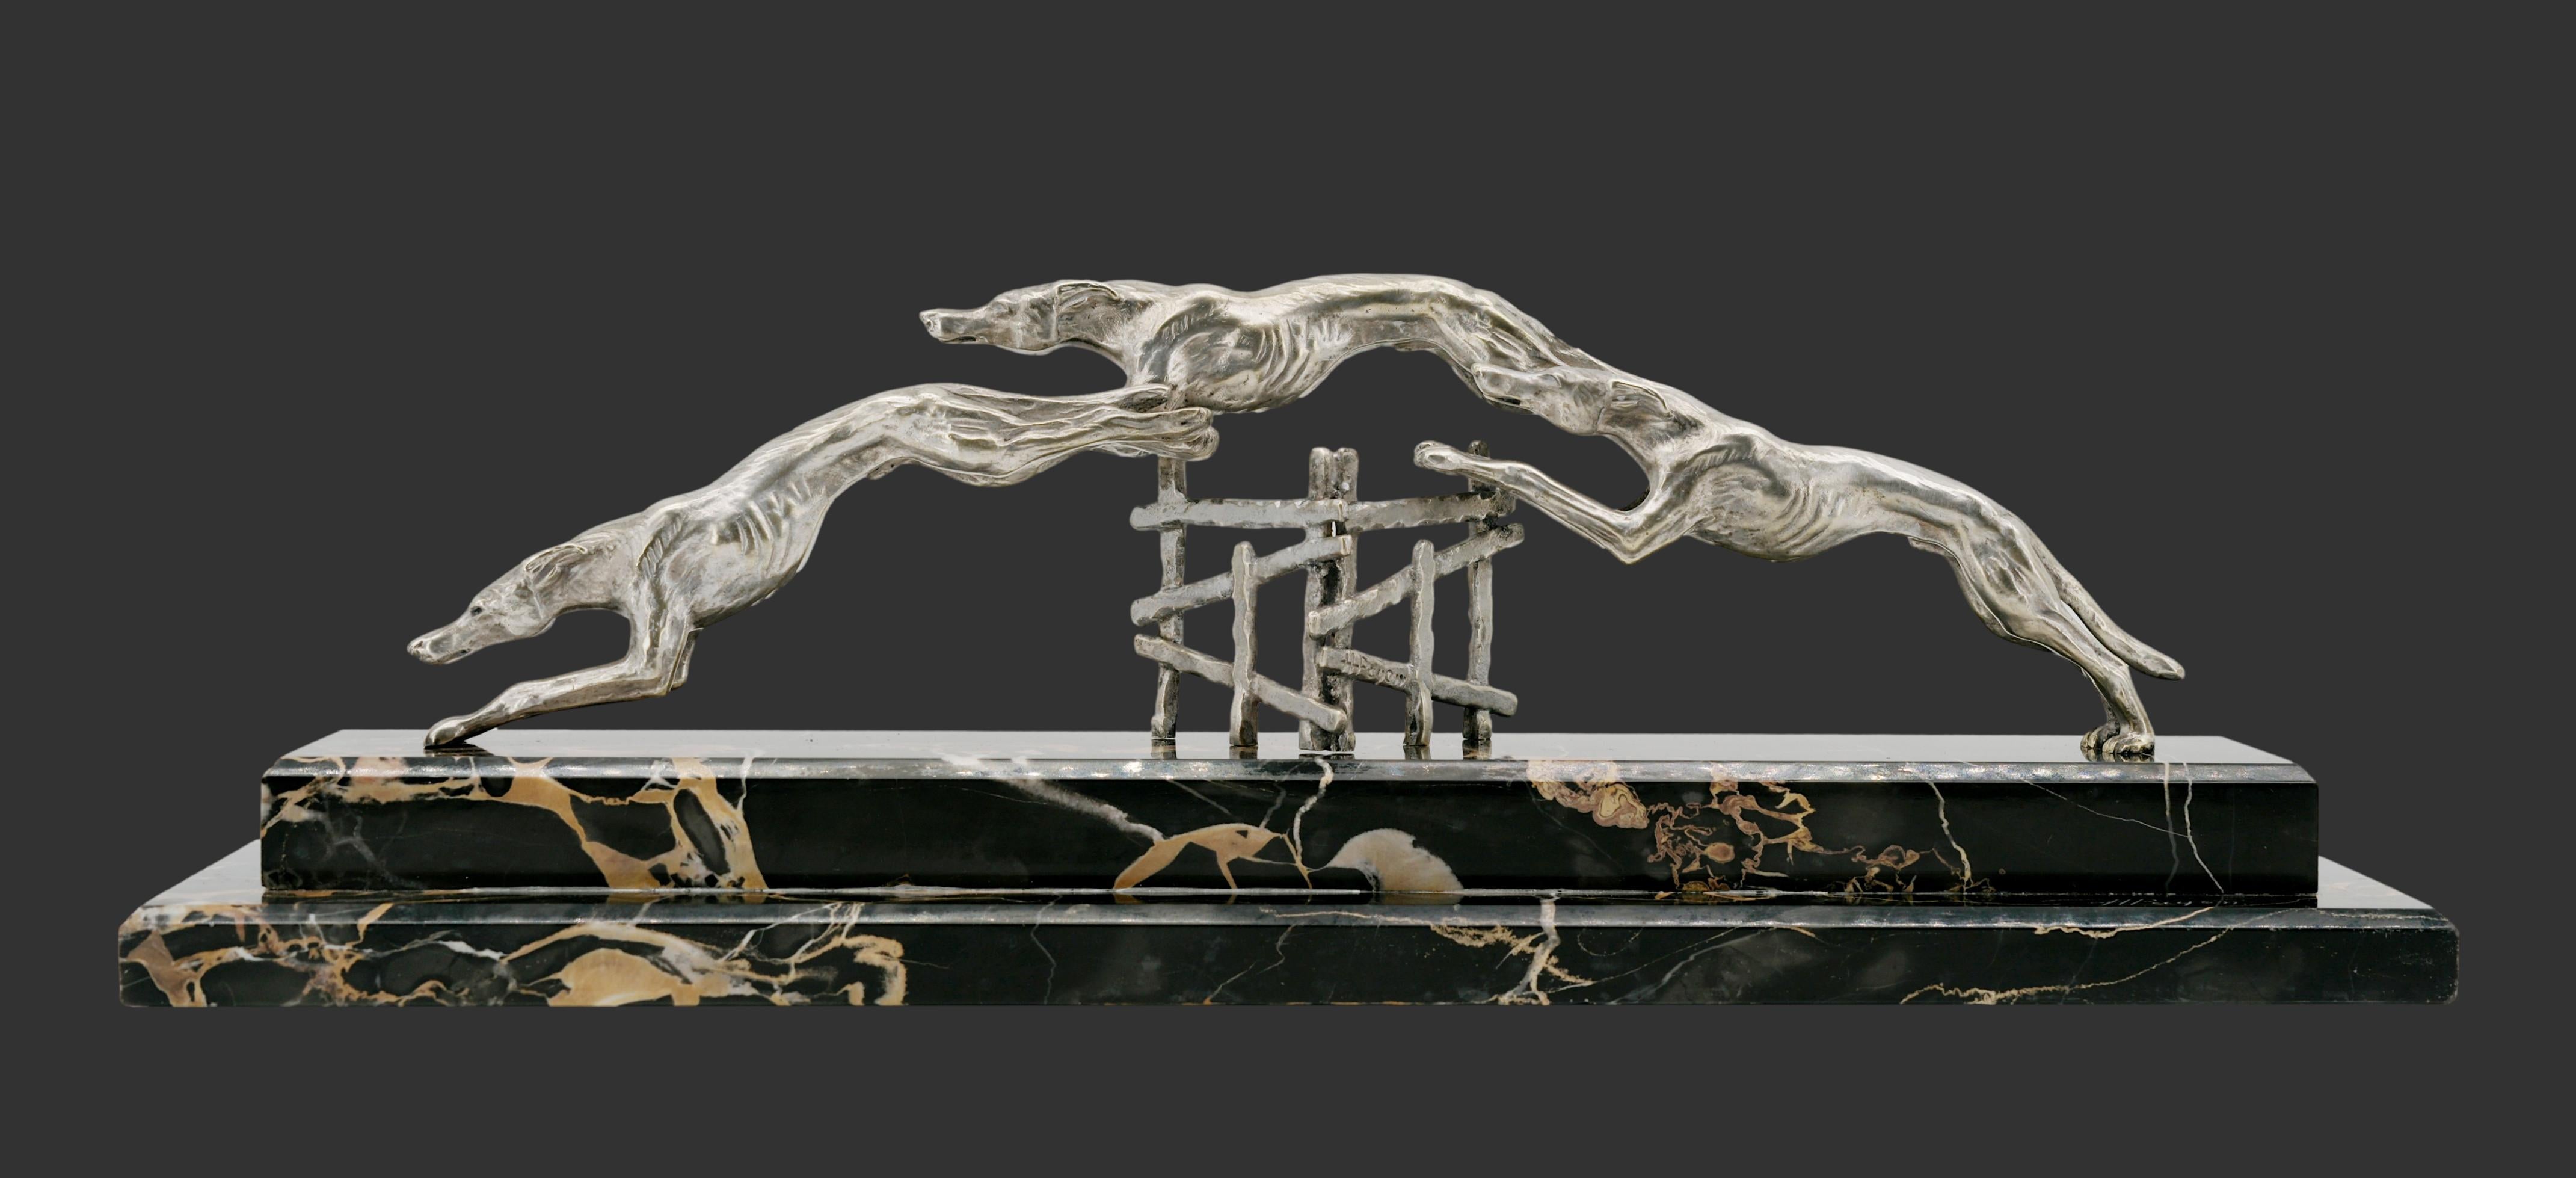 Sculpture française Art déco d'Henri PAYEN (1894-1933), France, vers 1925. Course de lévriers. Bronze argenté et marbre. Largeur : 50,3 cm, hauteur : 16 cm, profondeur : 13 cm. Signé 